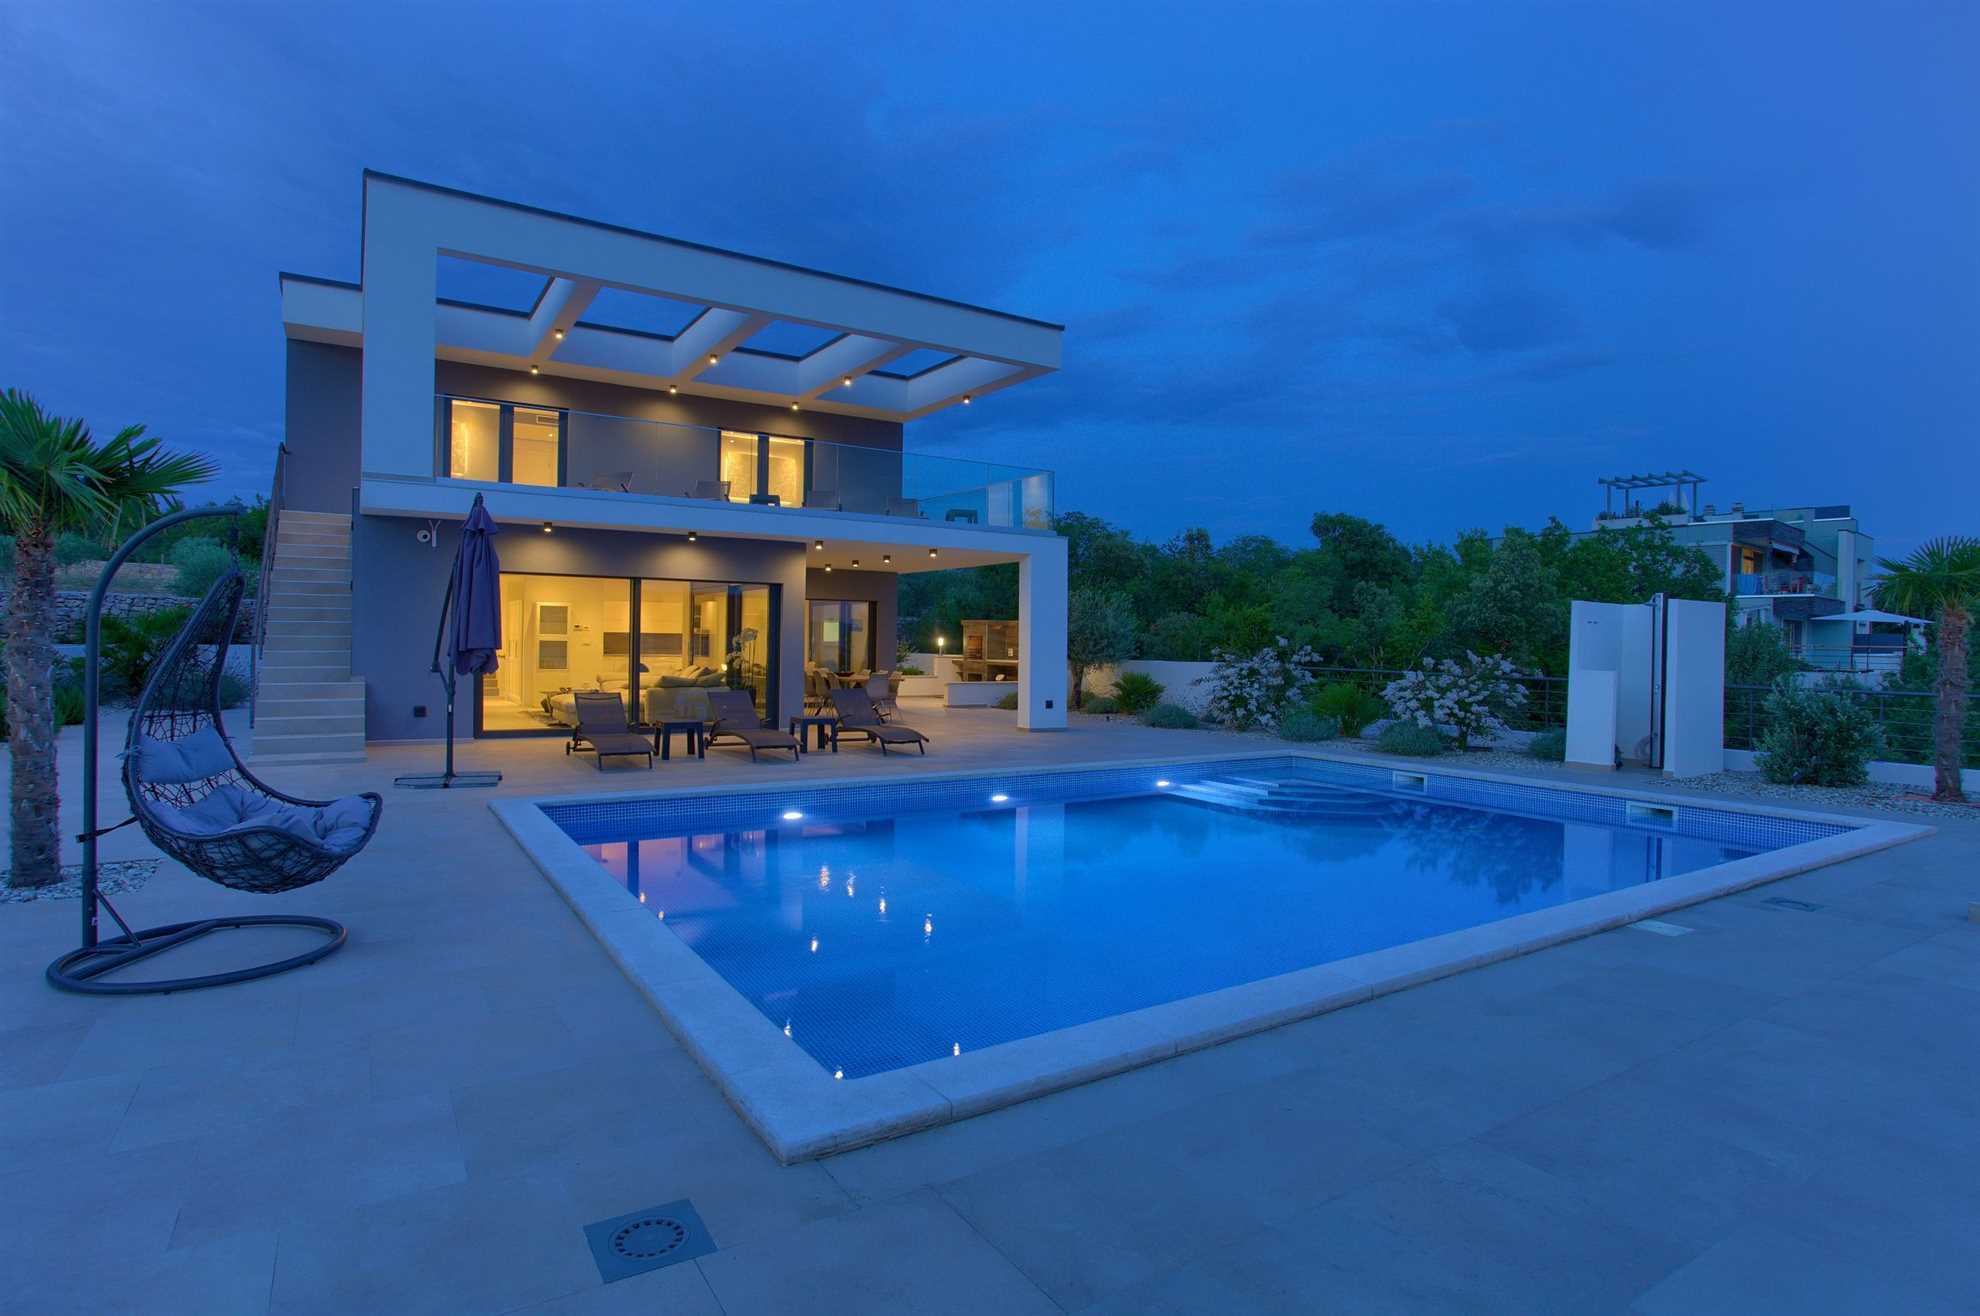 Villa Quadra with a pool